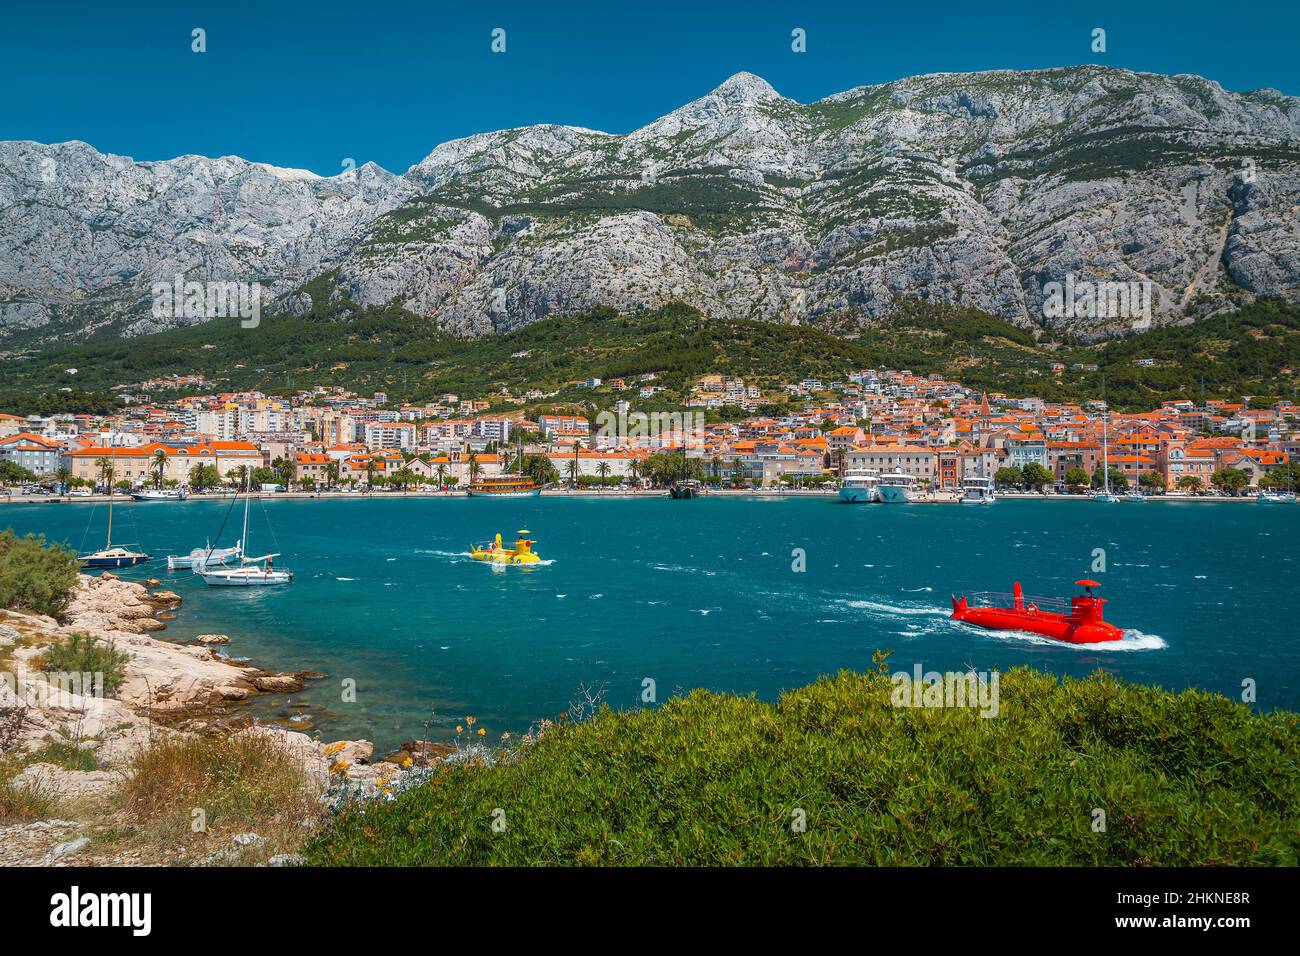 Coloridas embarcaciones submarinas que transportan turistas cerca de la costa. Hermoso paisaje urbano de Makarska con puerto deportivo y altas montañas en el fondo, Dalmat Foto de stock